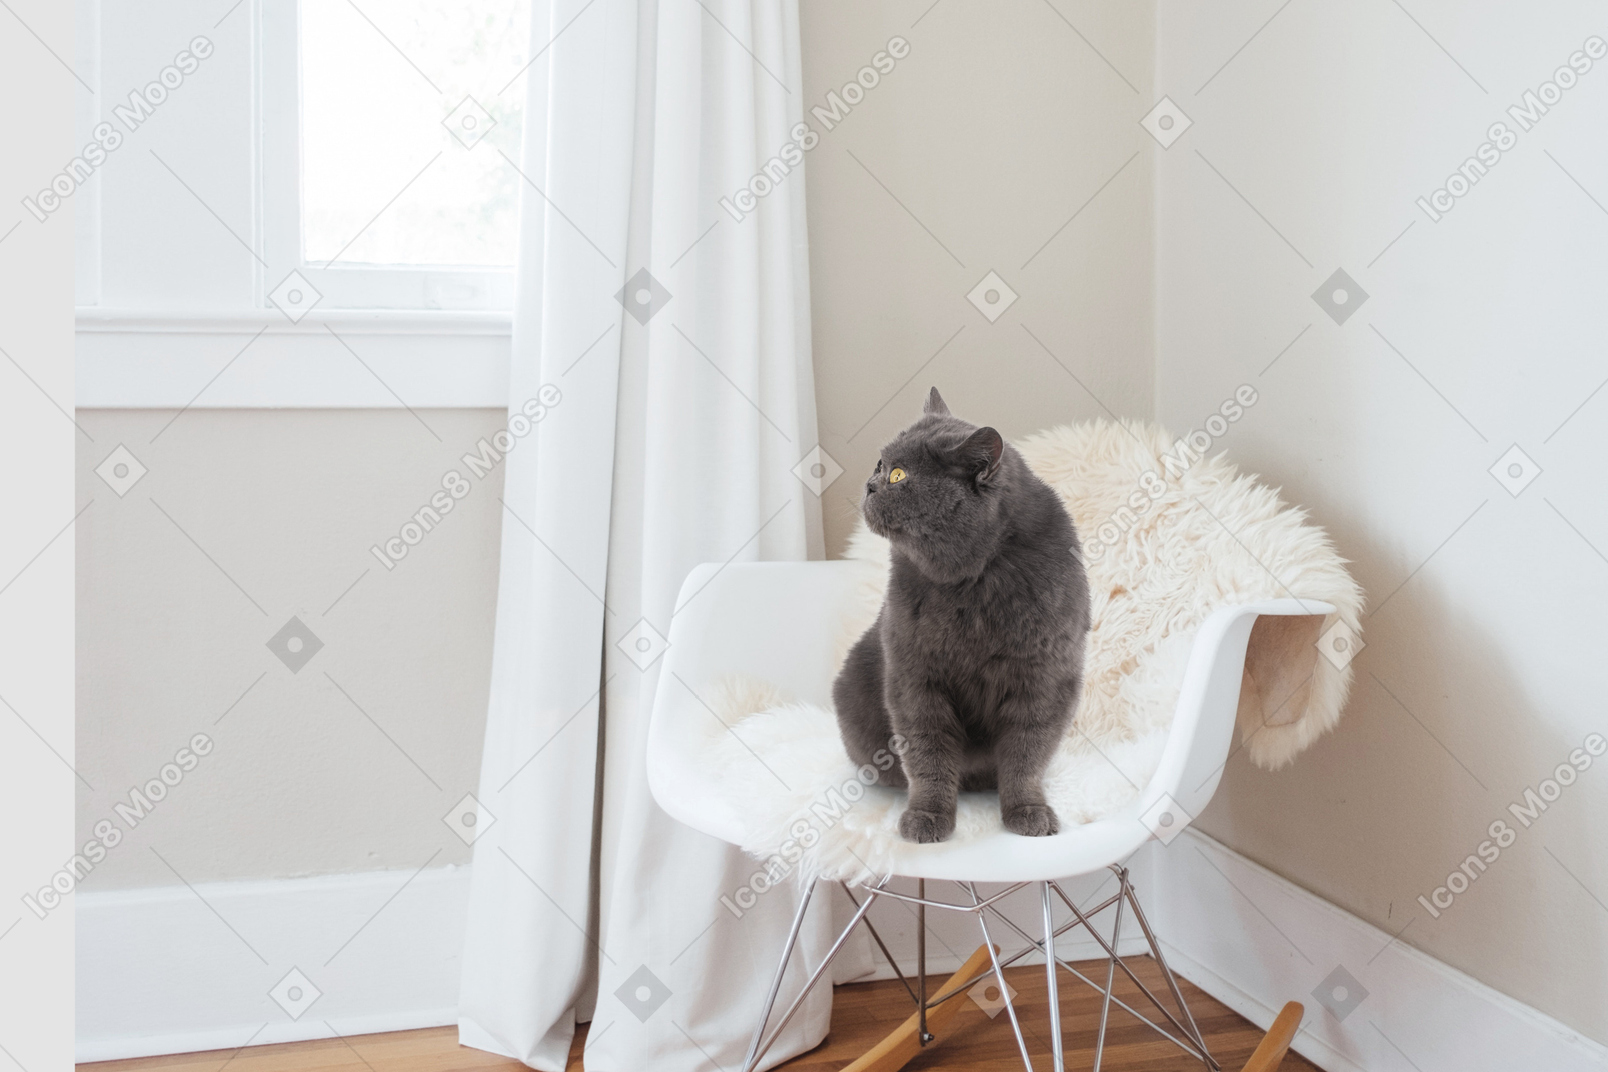 의자에 앉아 있는 고양이